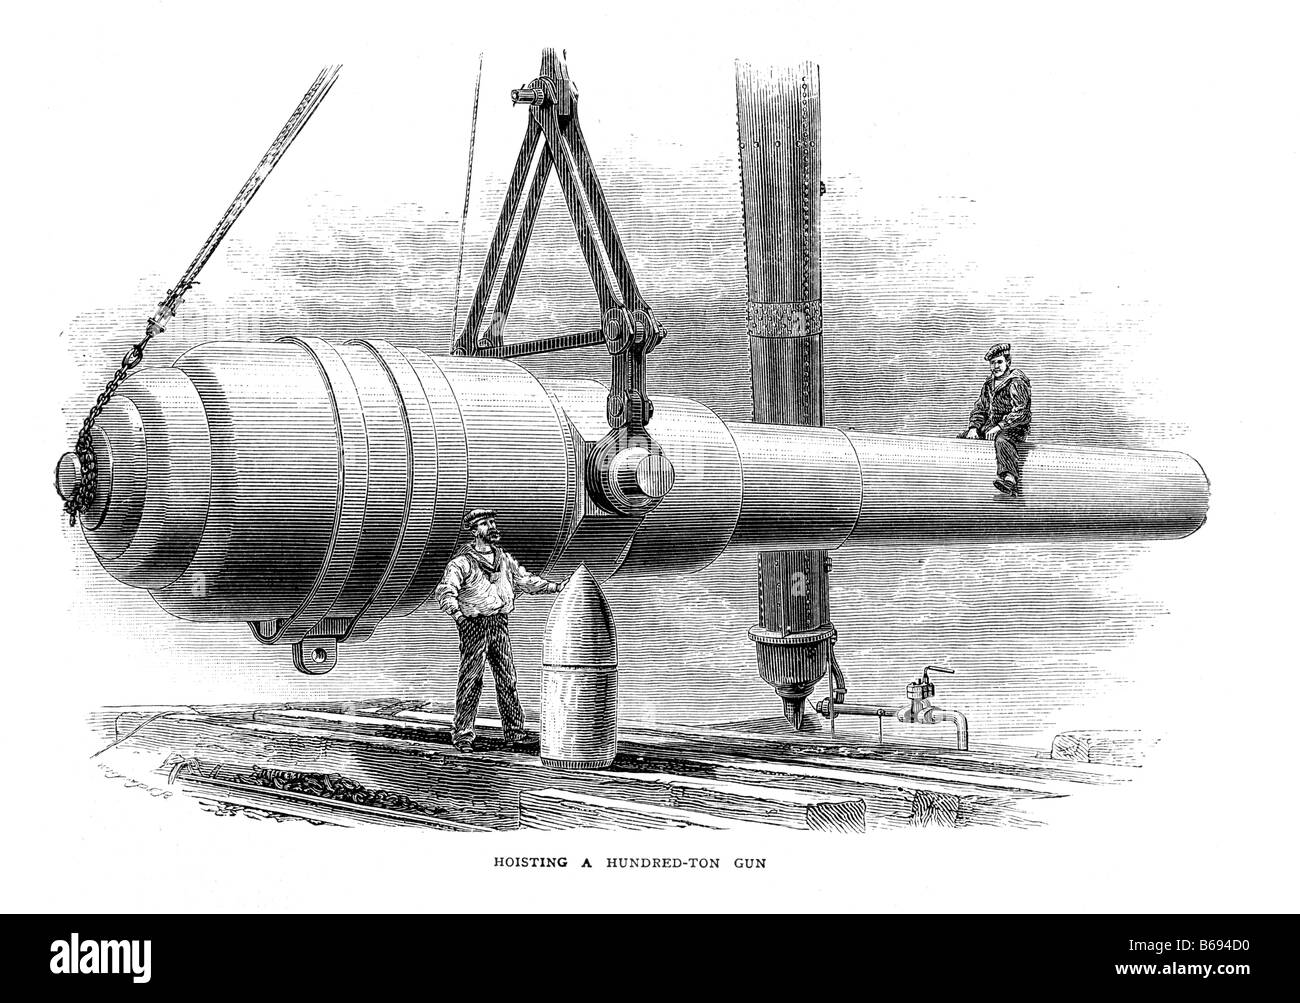 Un canon de chargement de cent tonnes construit par W G Armstrong Ltd Elswick Newcastle upon Tyne Illustration du XIXe siècle Banque D'Images